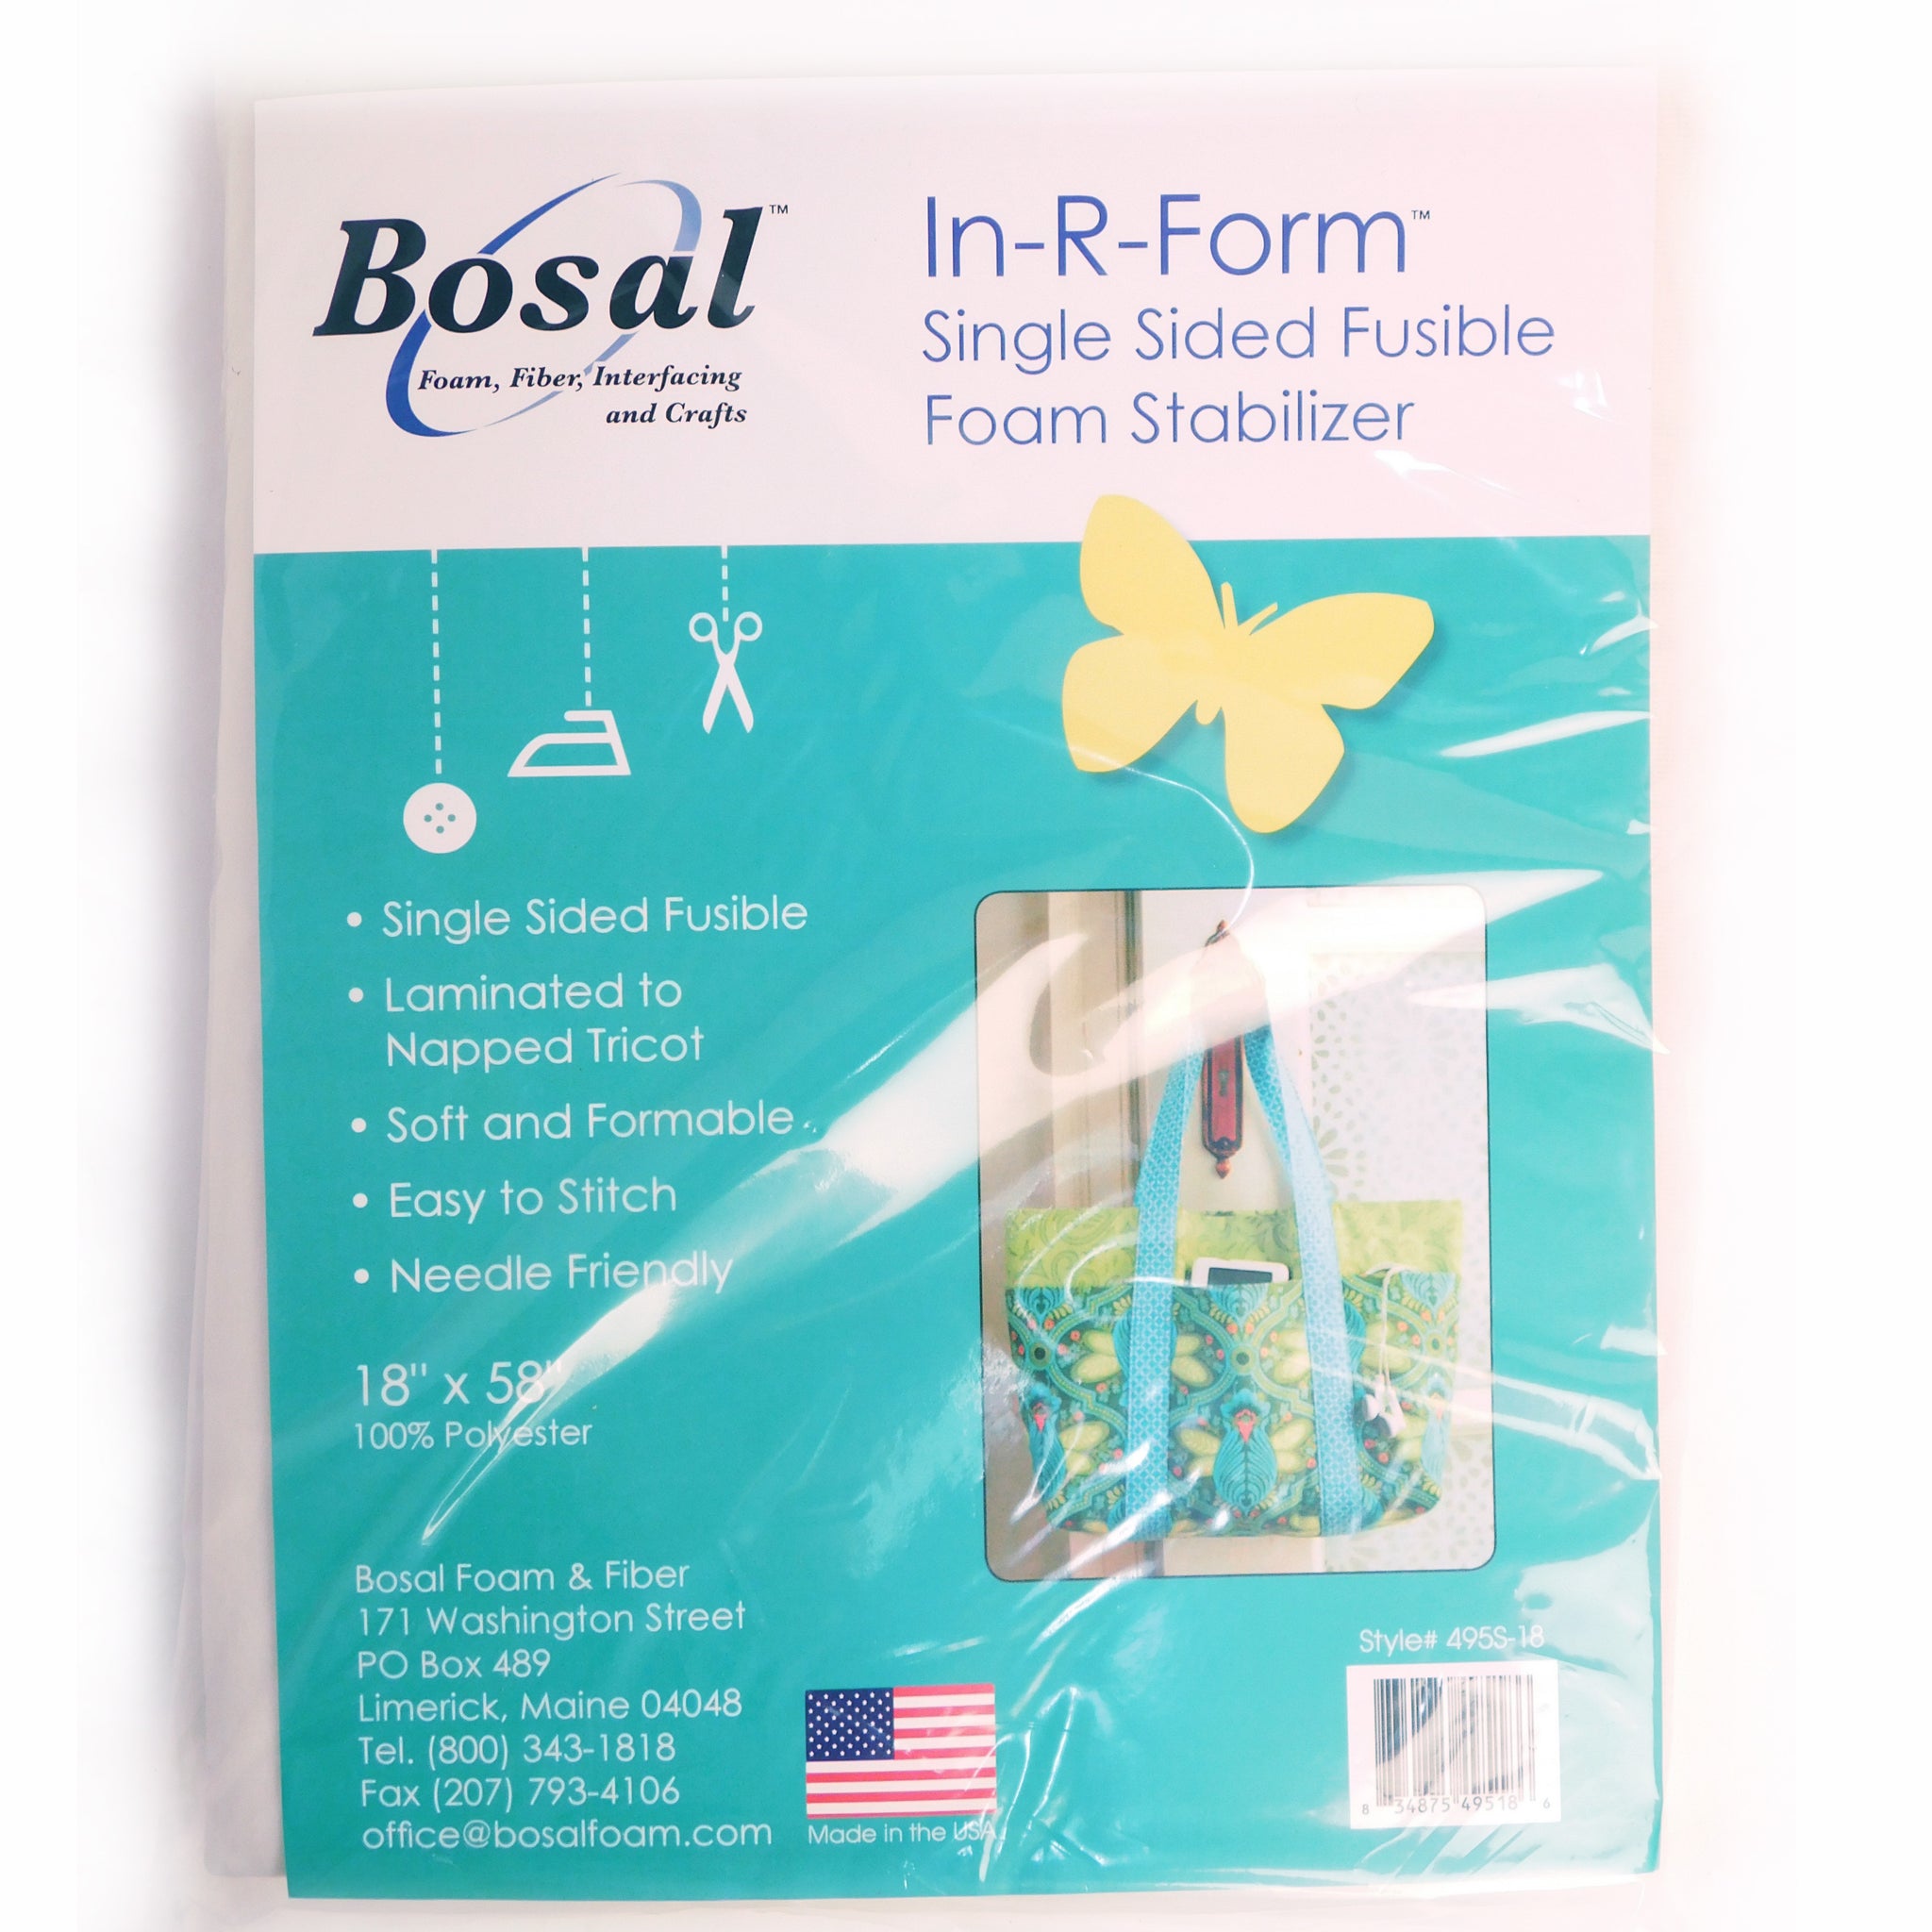 Bosal In-R-Form Single Sided Fusible Foam Stabilizer, 18" x 58" 495BS-18